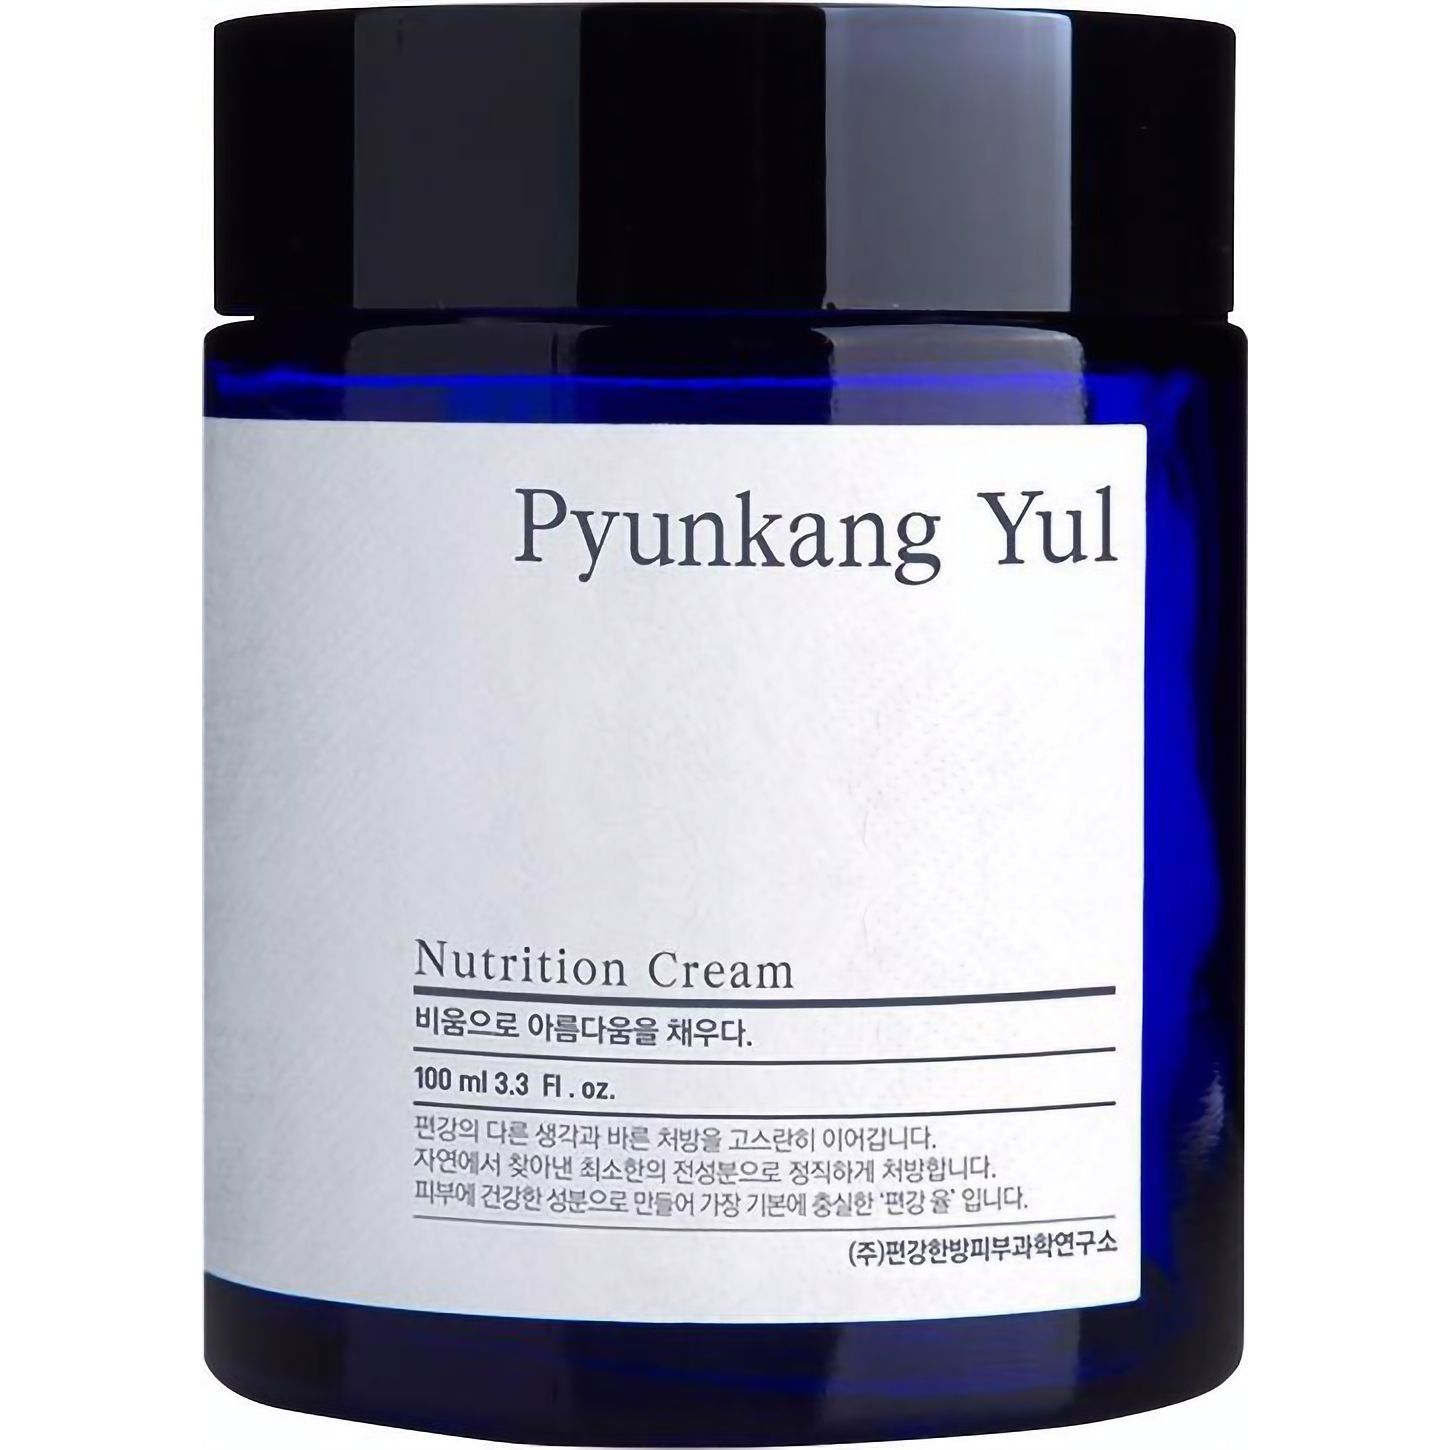 Крем для лица Pyunkang Yul Nutrition Cream питательный 100 мл - фото 1